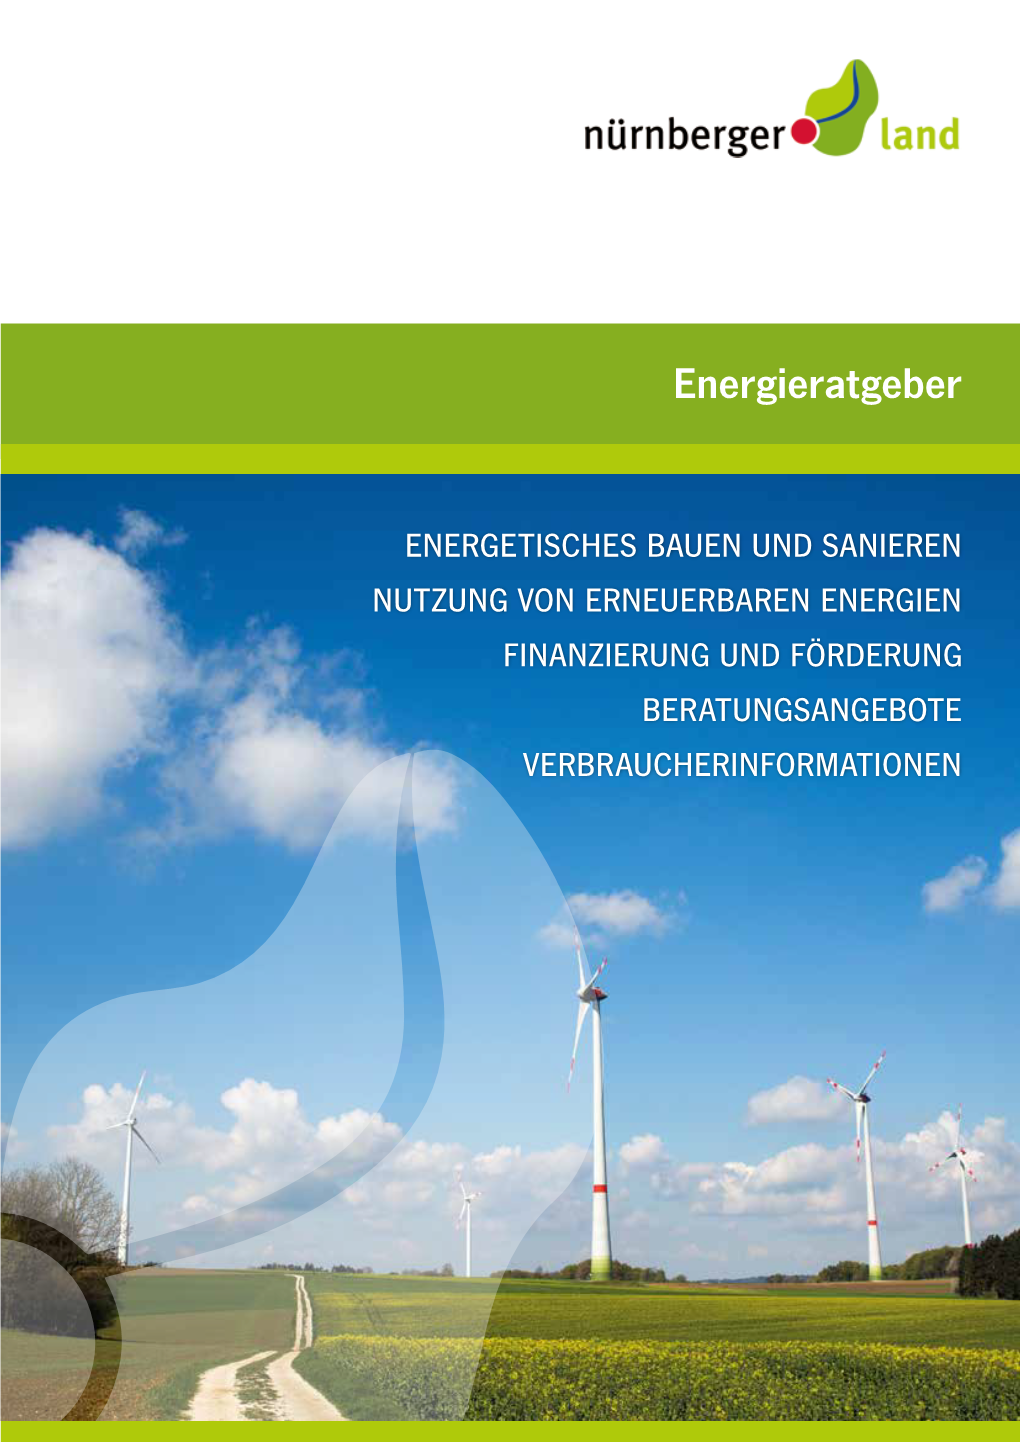 Energieratgeber Nürnberger Land